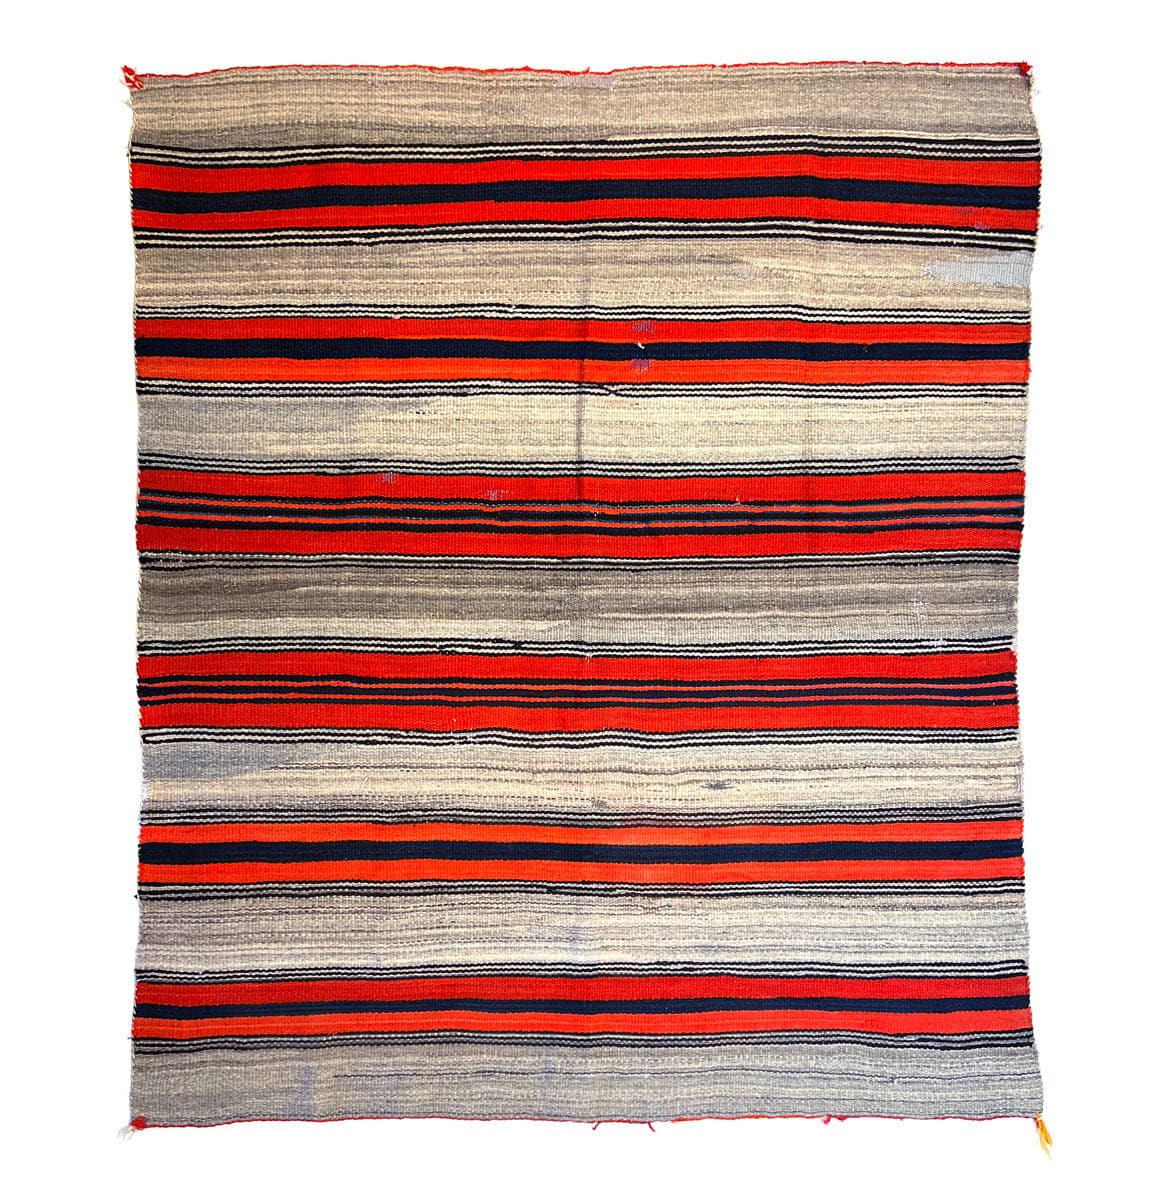 Navajo Moki Blanket c. 1880s, 68.5" x 61" (T91335-1022-002)